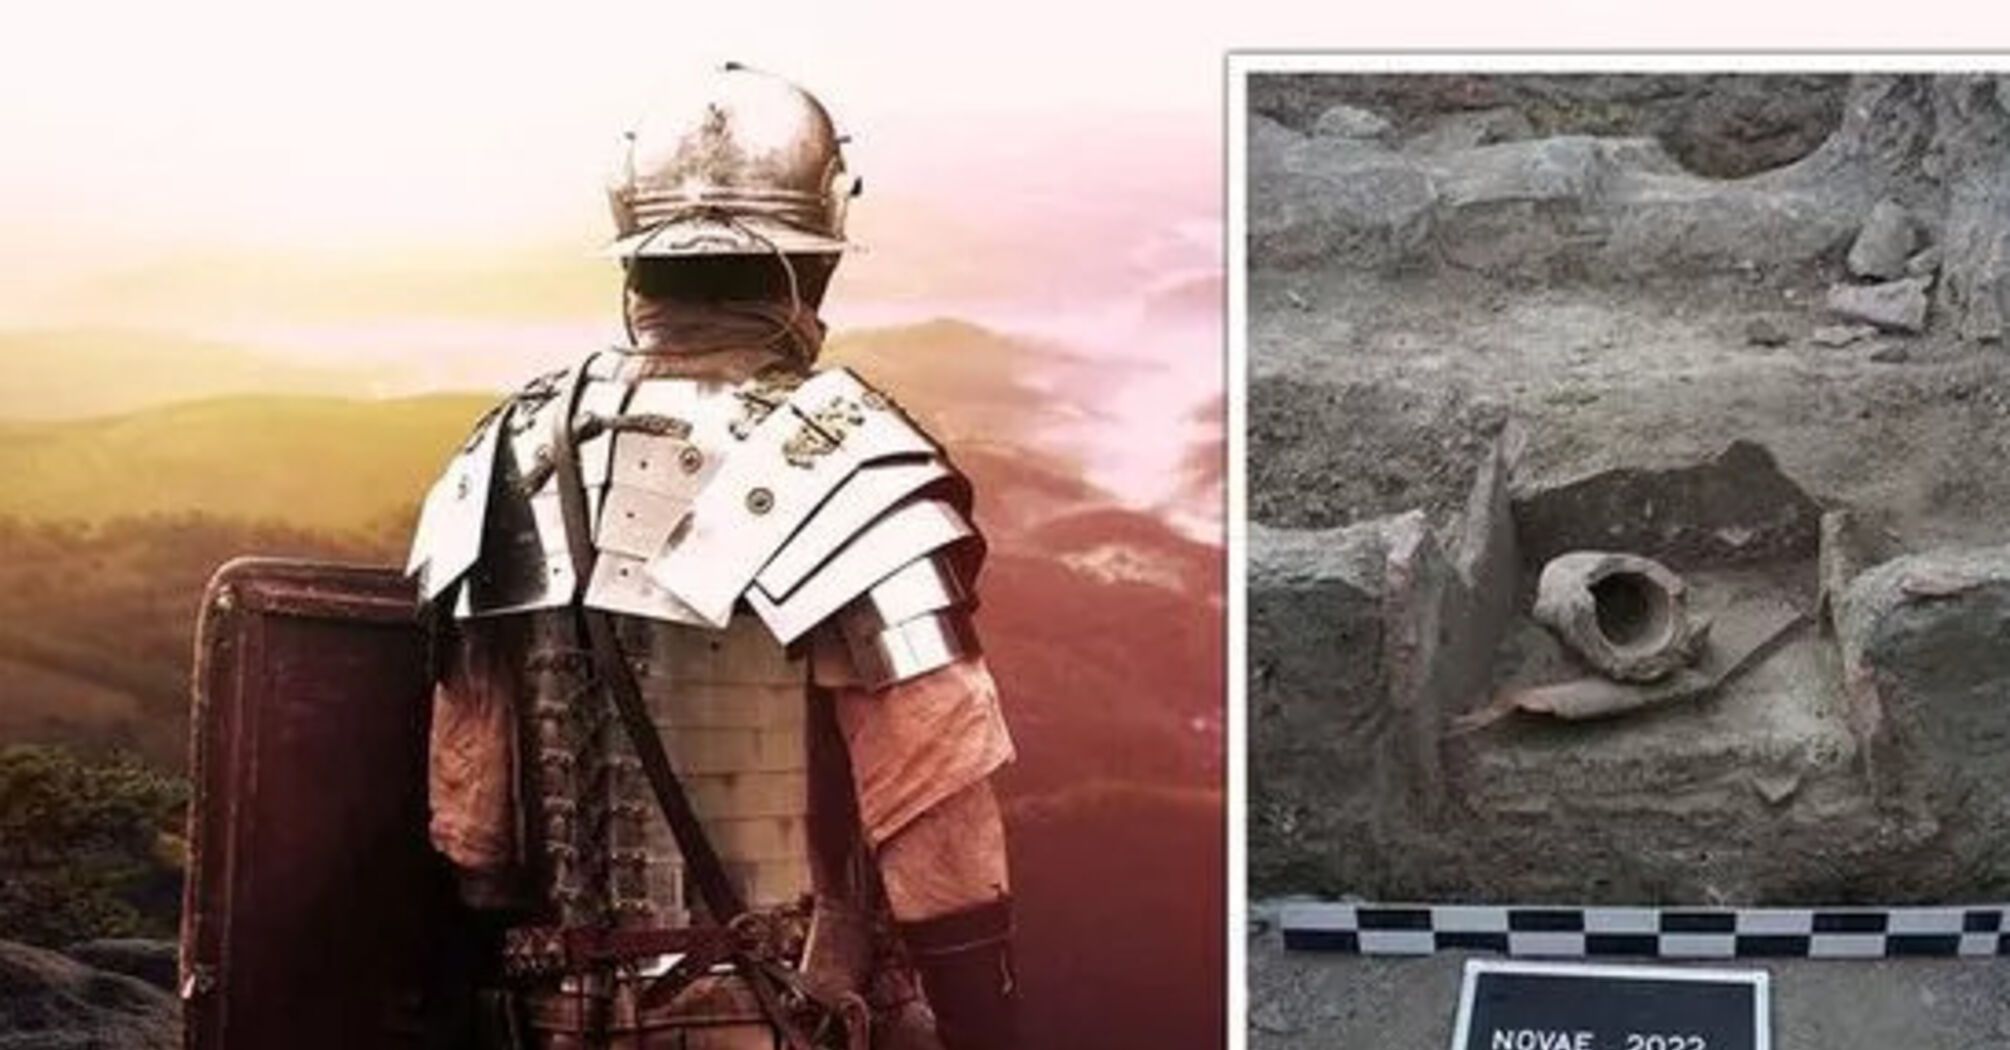 Археологи во время раскопок в Болгарии обнаружили римский 'холодильник' с остатками еды, которому 1800 лет (фото)